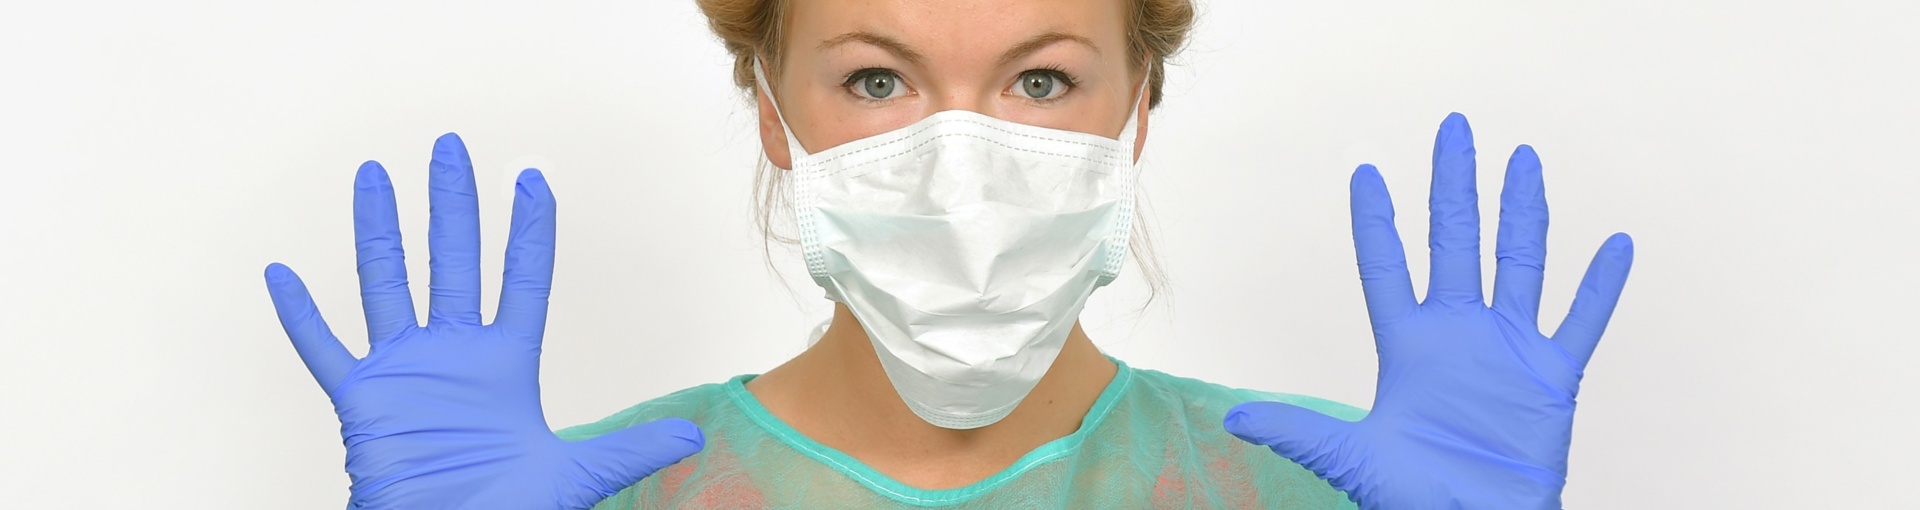 Junge Dame in medizinischer Schutzkleidung trägt Maske und zeigt ihre Hände mit Handschuhe bedeckt